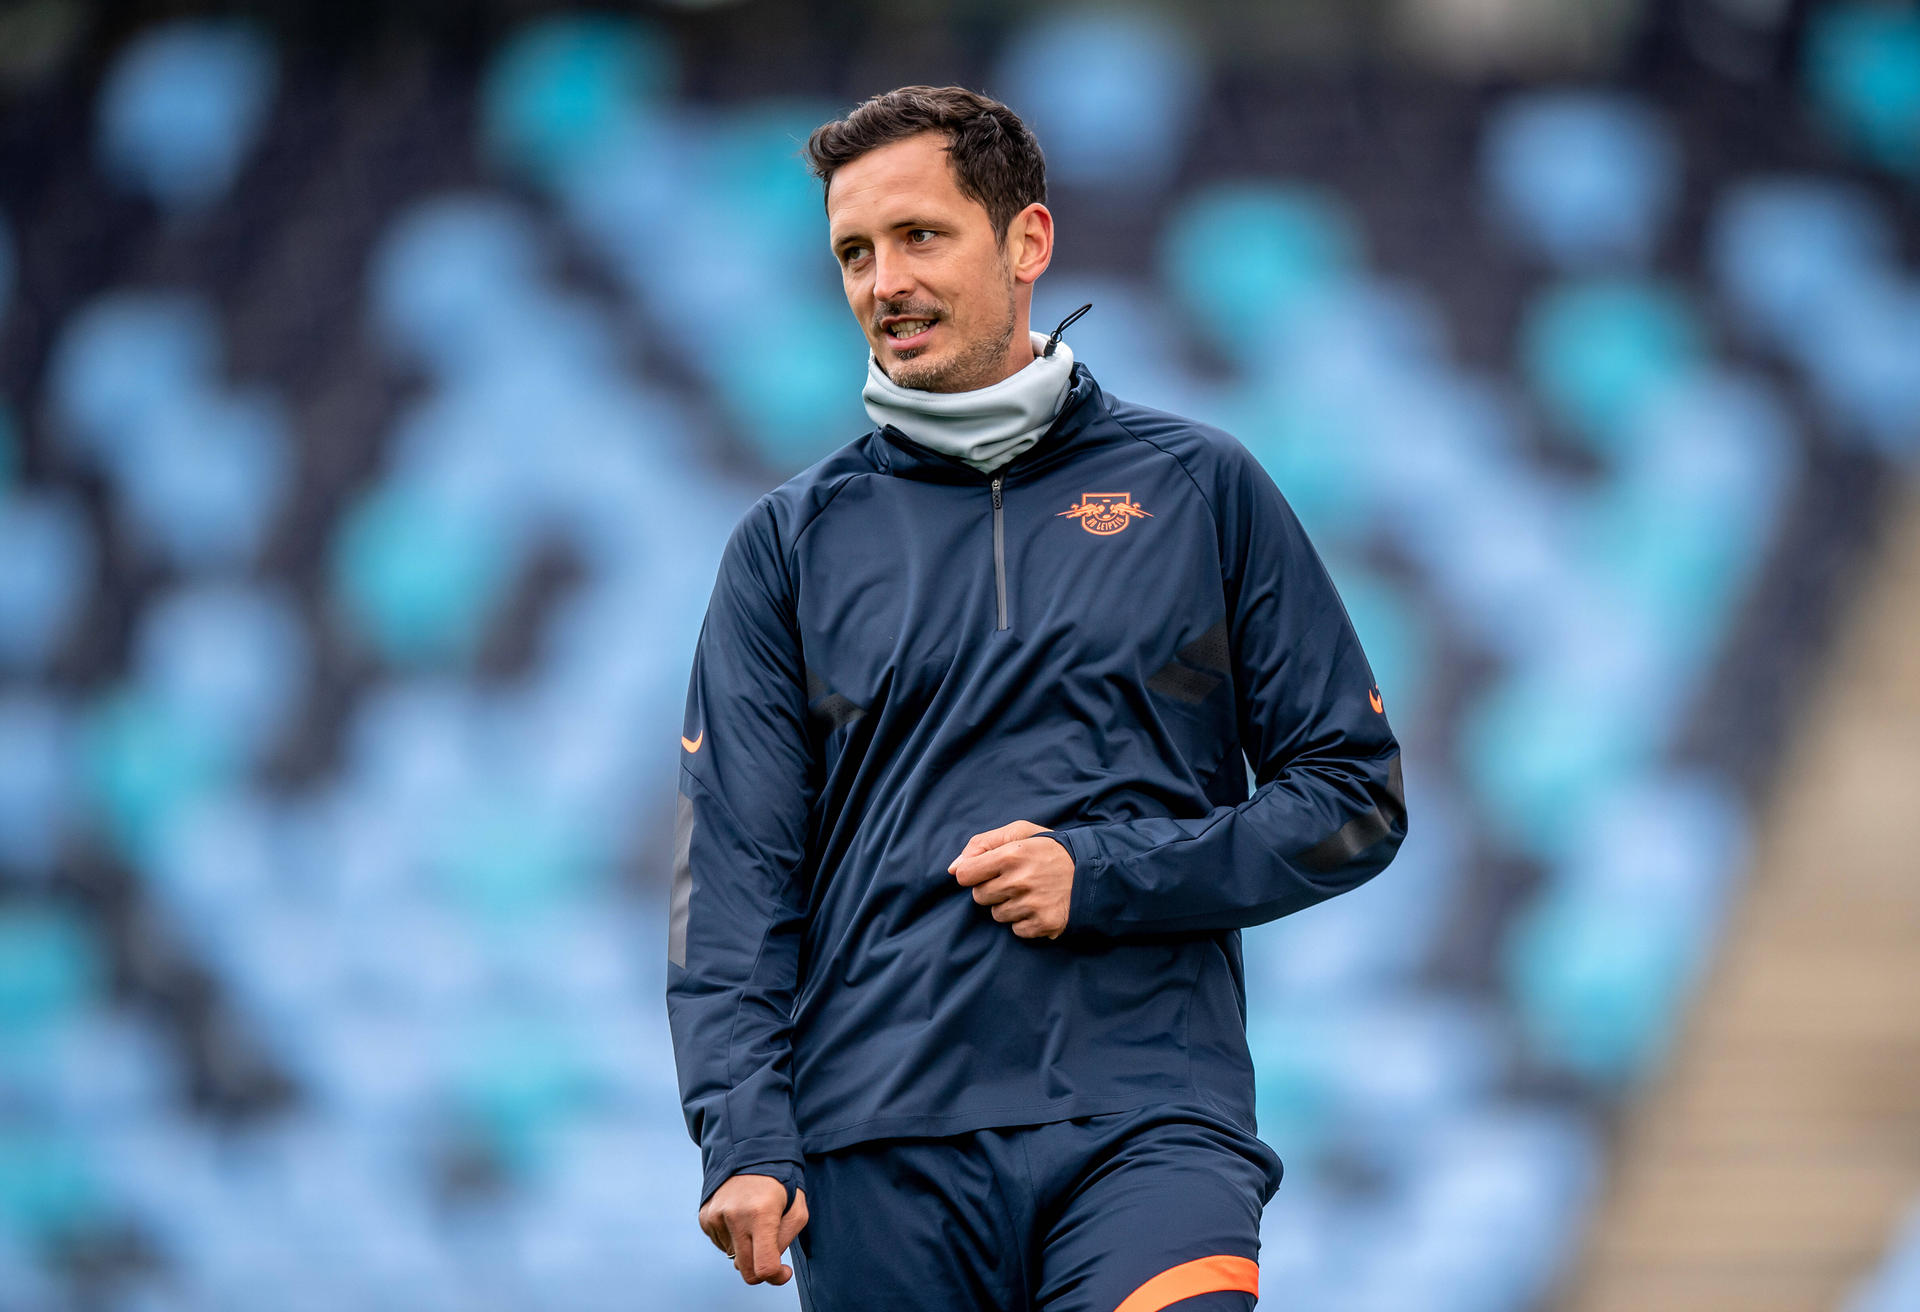 Dino Toppmöller ist seit 2020 Co-Trainer beim RB Leipzig. Nun möchte er offenbar Julian Nagelsmann zum FC Bayern folgen.